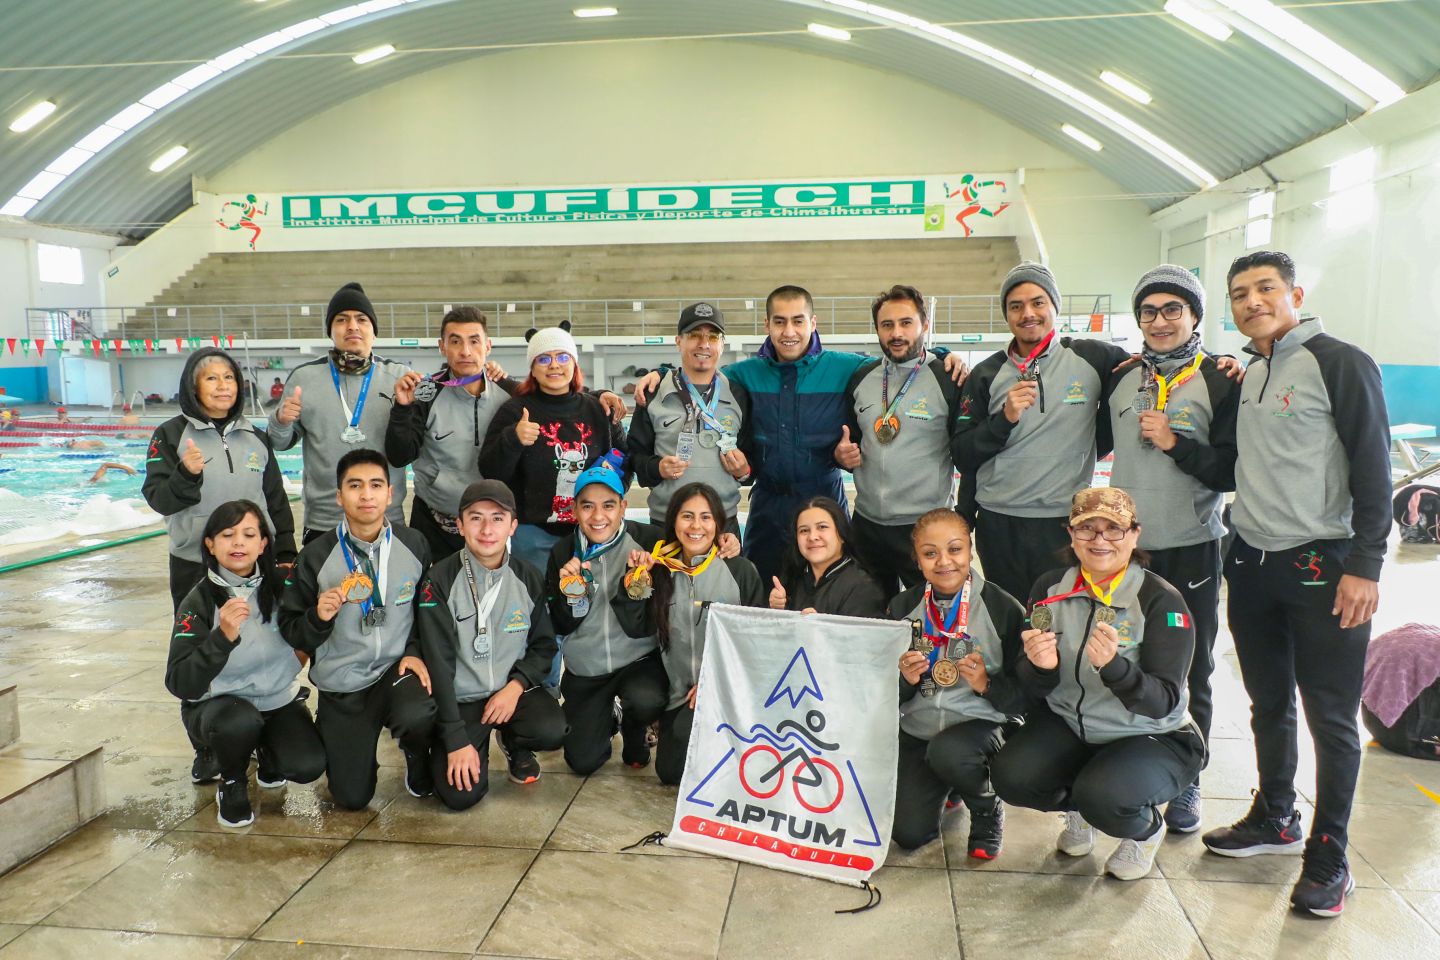 
Equipo de Chimalhuacan de triatlón alista participación en competencias nacionales
